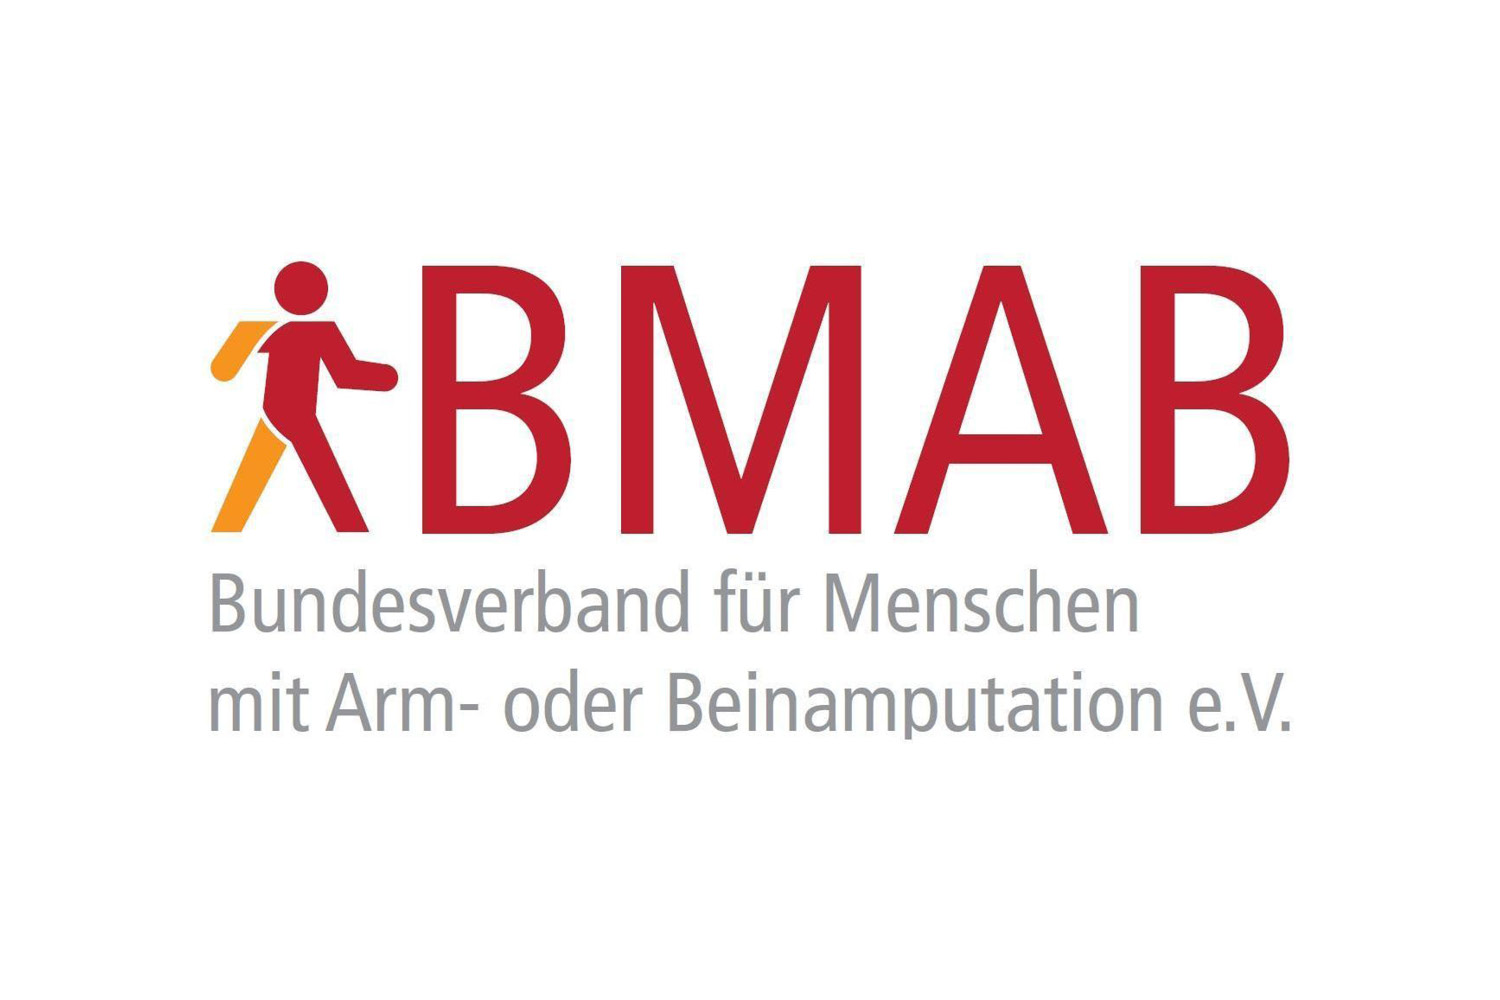 BMAB Bundesverband für Menschen mit Arm- oder Beimamputation Rehaform Sanitätshaus